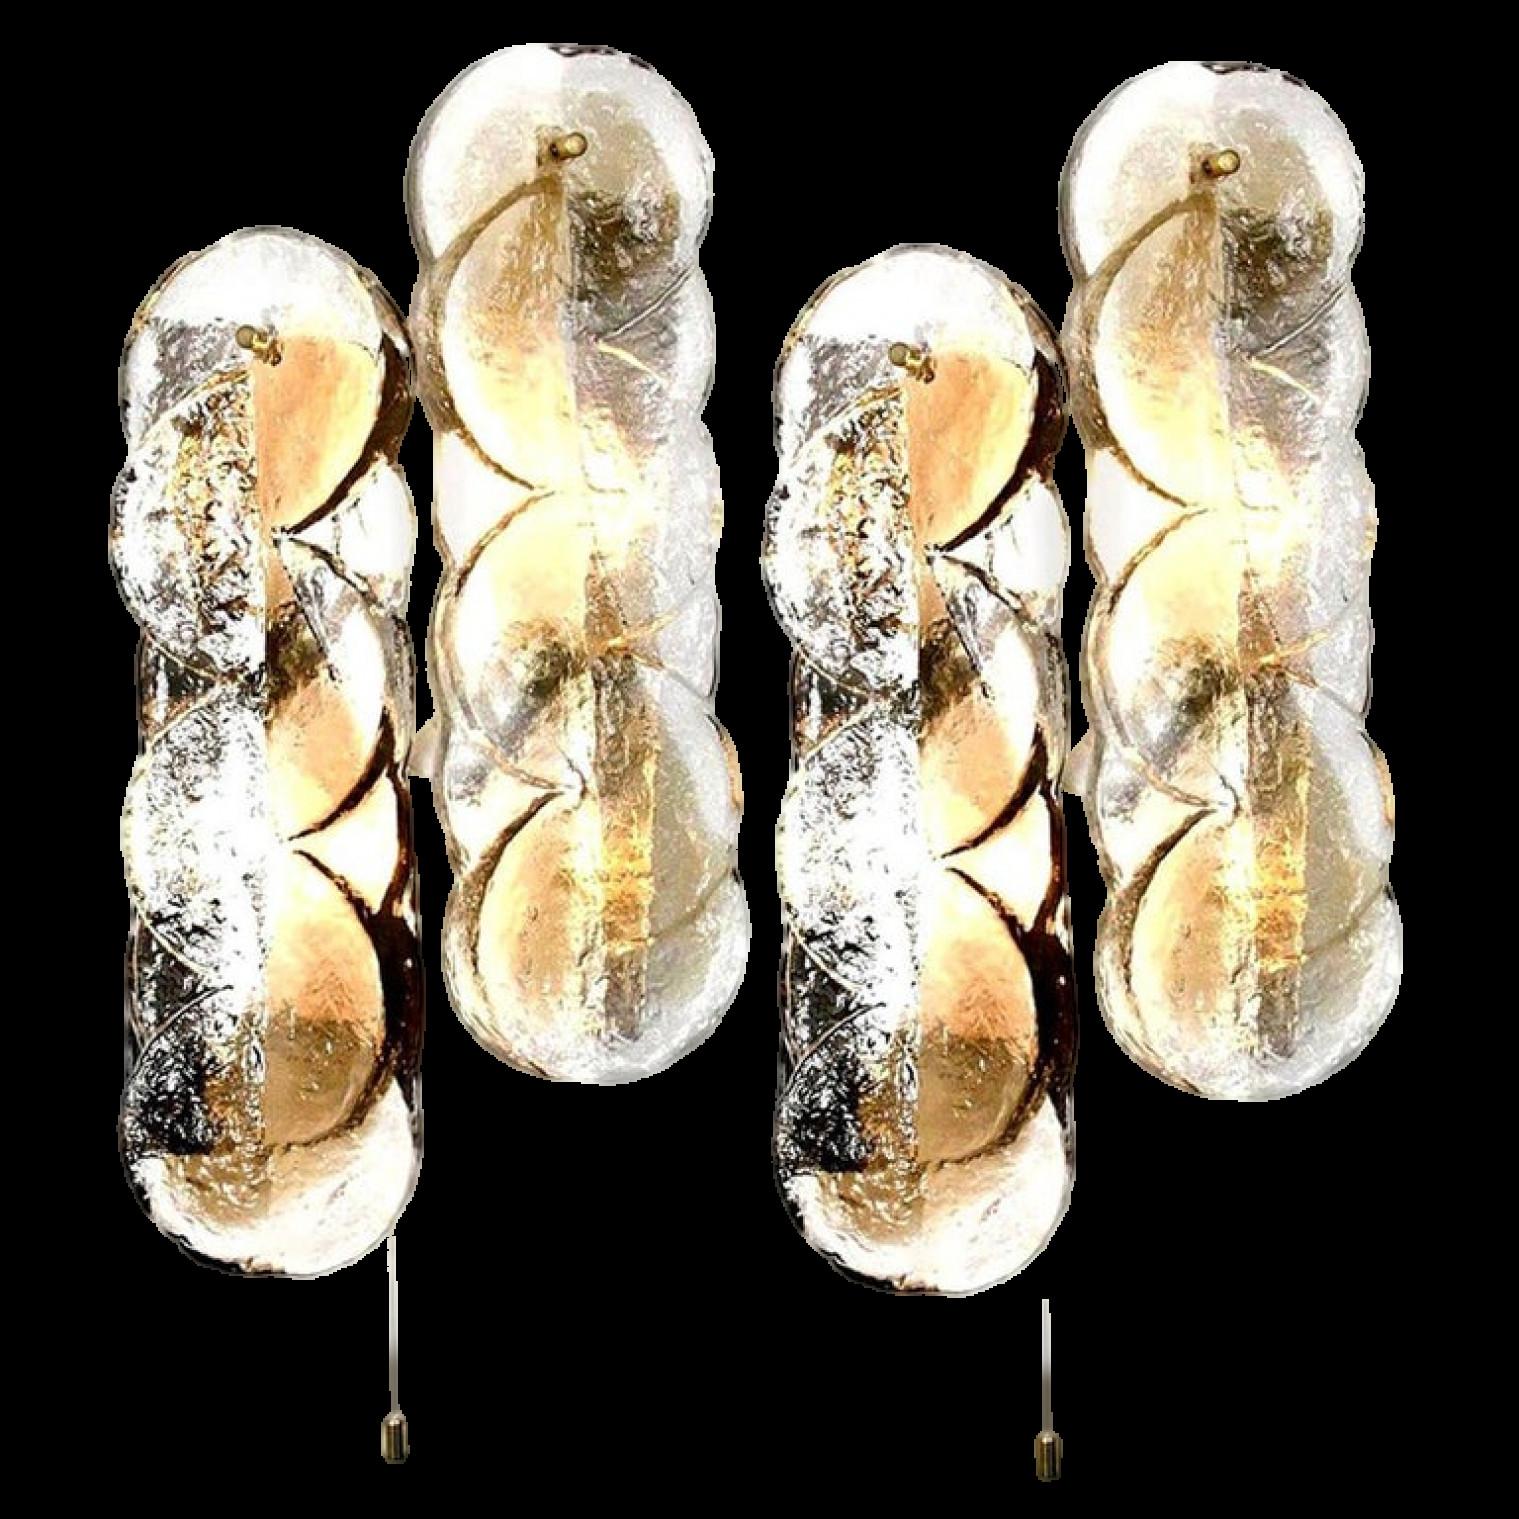 Ein Paar Kalmar Swirl Wandleuchten mit klaren Glasscheiben und hellen, bernsteinfarbenen Goldfischstreifen. Das schöne, dicke, strukturierte Glas wird durch weiße Metallbeschläge ergänzt. Schöne Messingknöpfe. In ausgezeichnetem Zustand.

Jeder